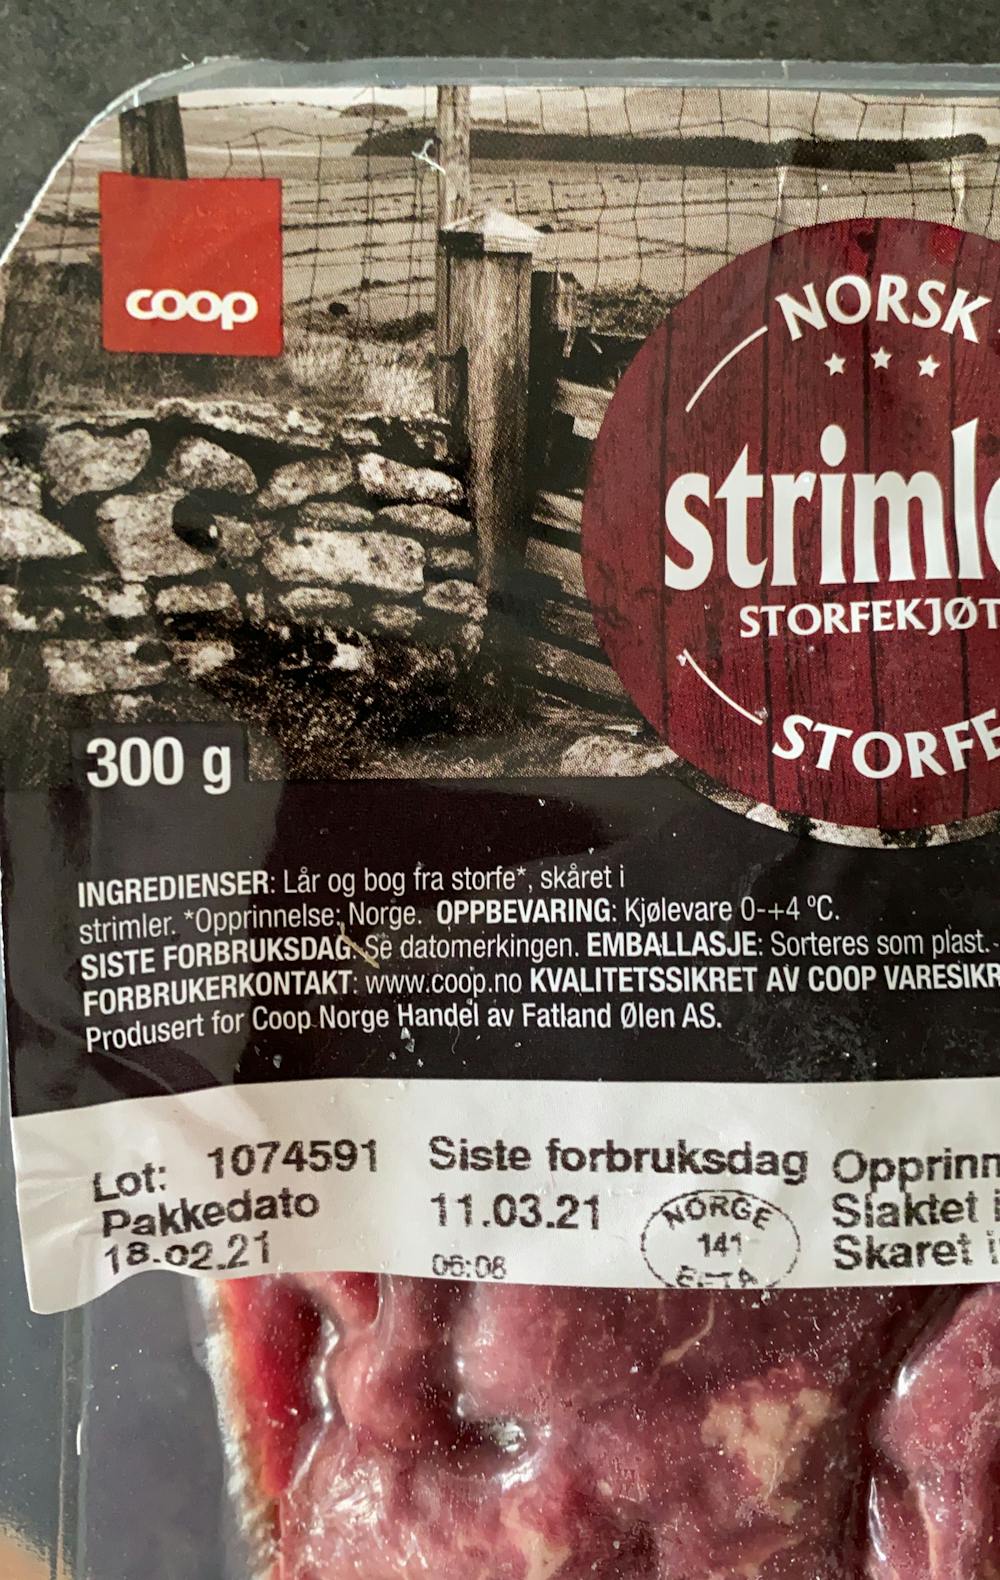 Ingredienslisten til Norsk strimlet storfe, Coop